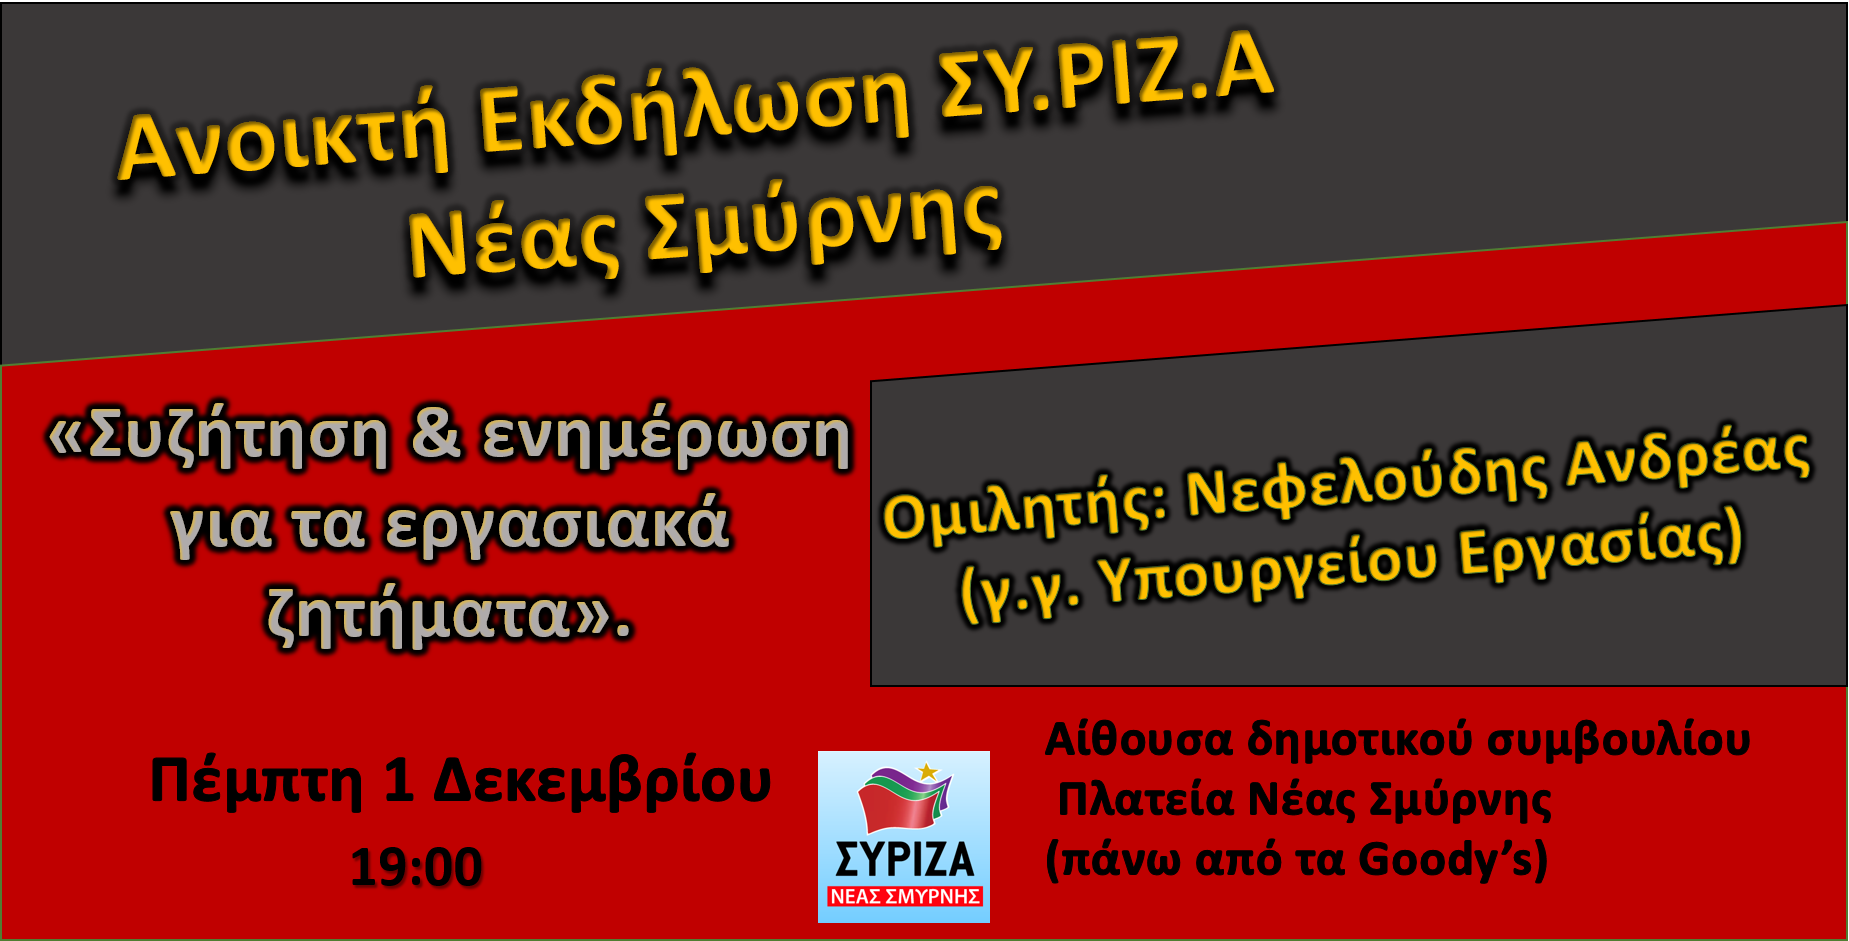 Ανοιχτή εκδήλωση του ΣΥΡΙΖΑ Νέας Σμύρνης για τα εργασιακά με ομιλητή τον Ανδρ. Νεφελούδη